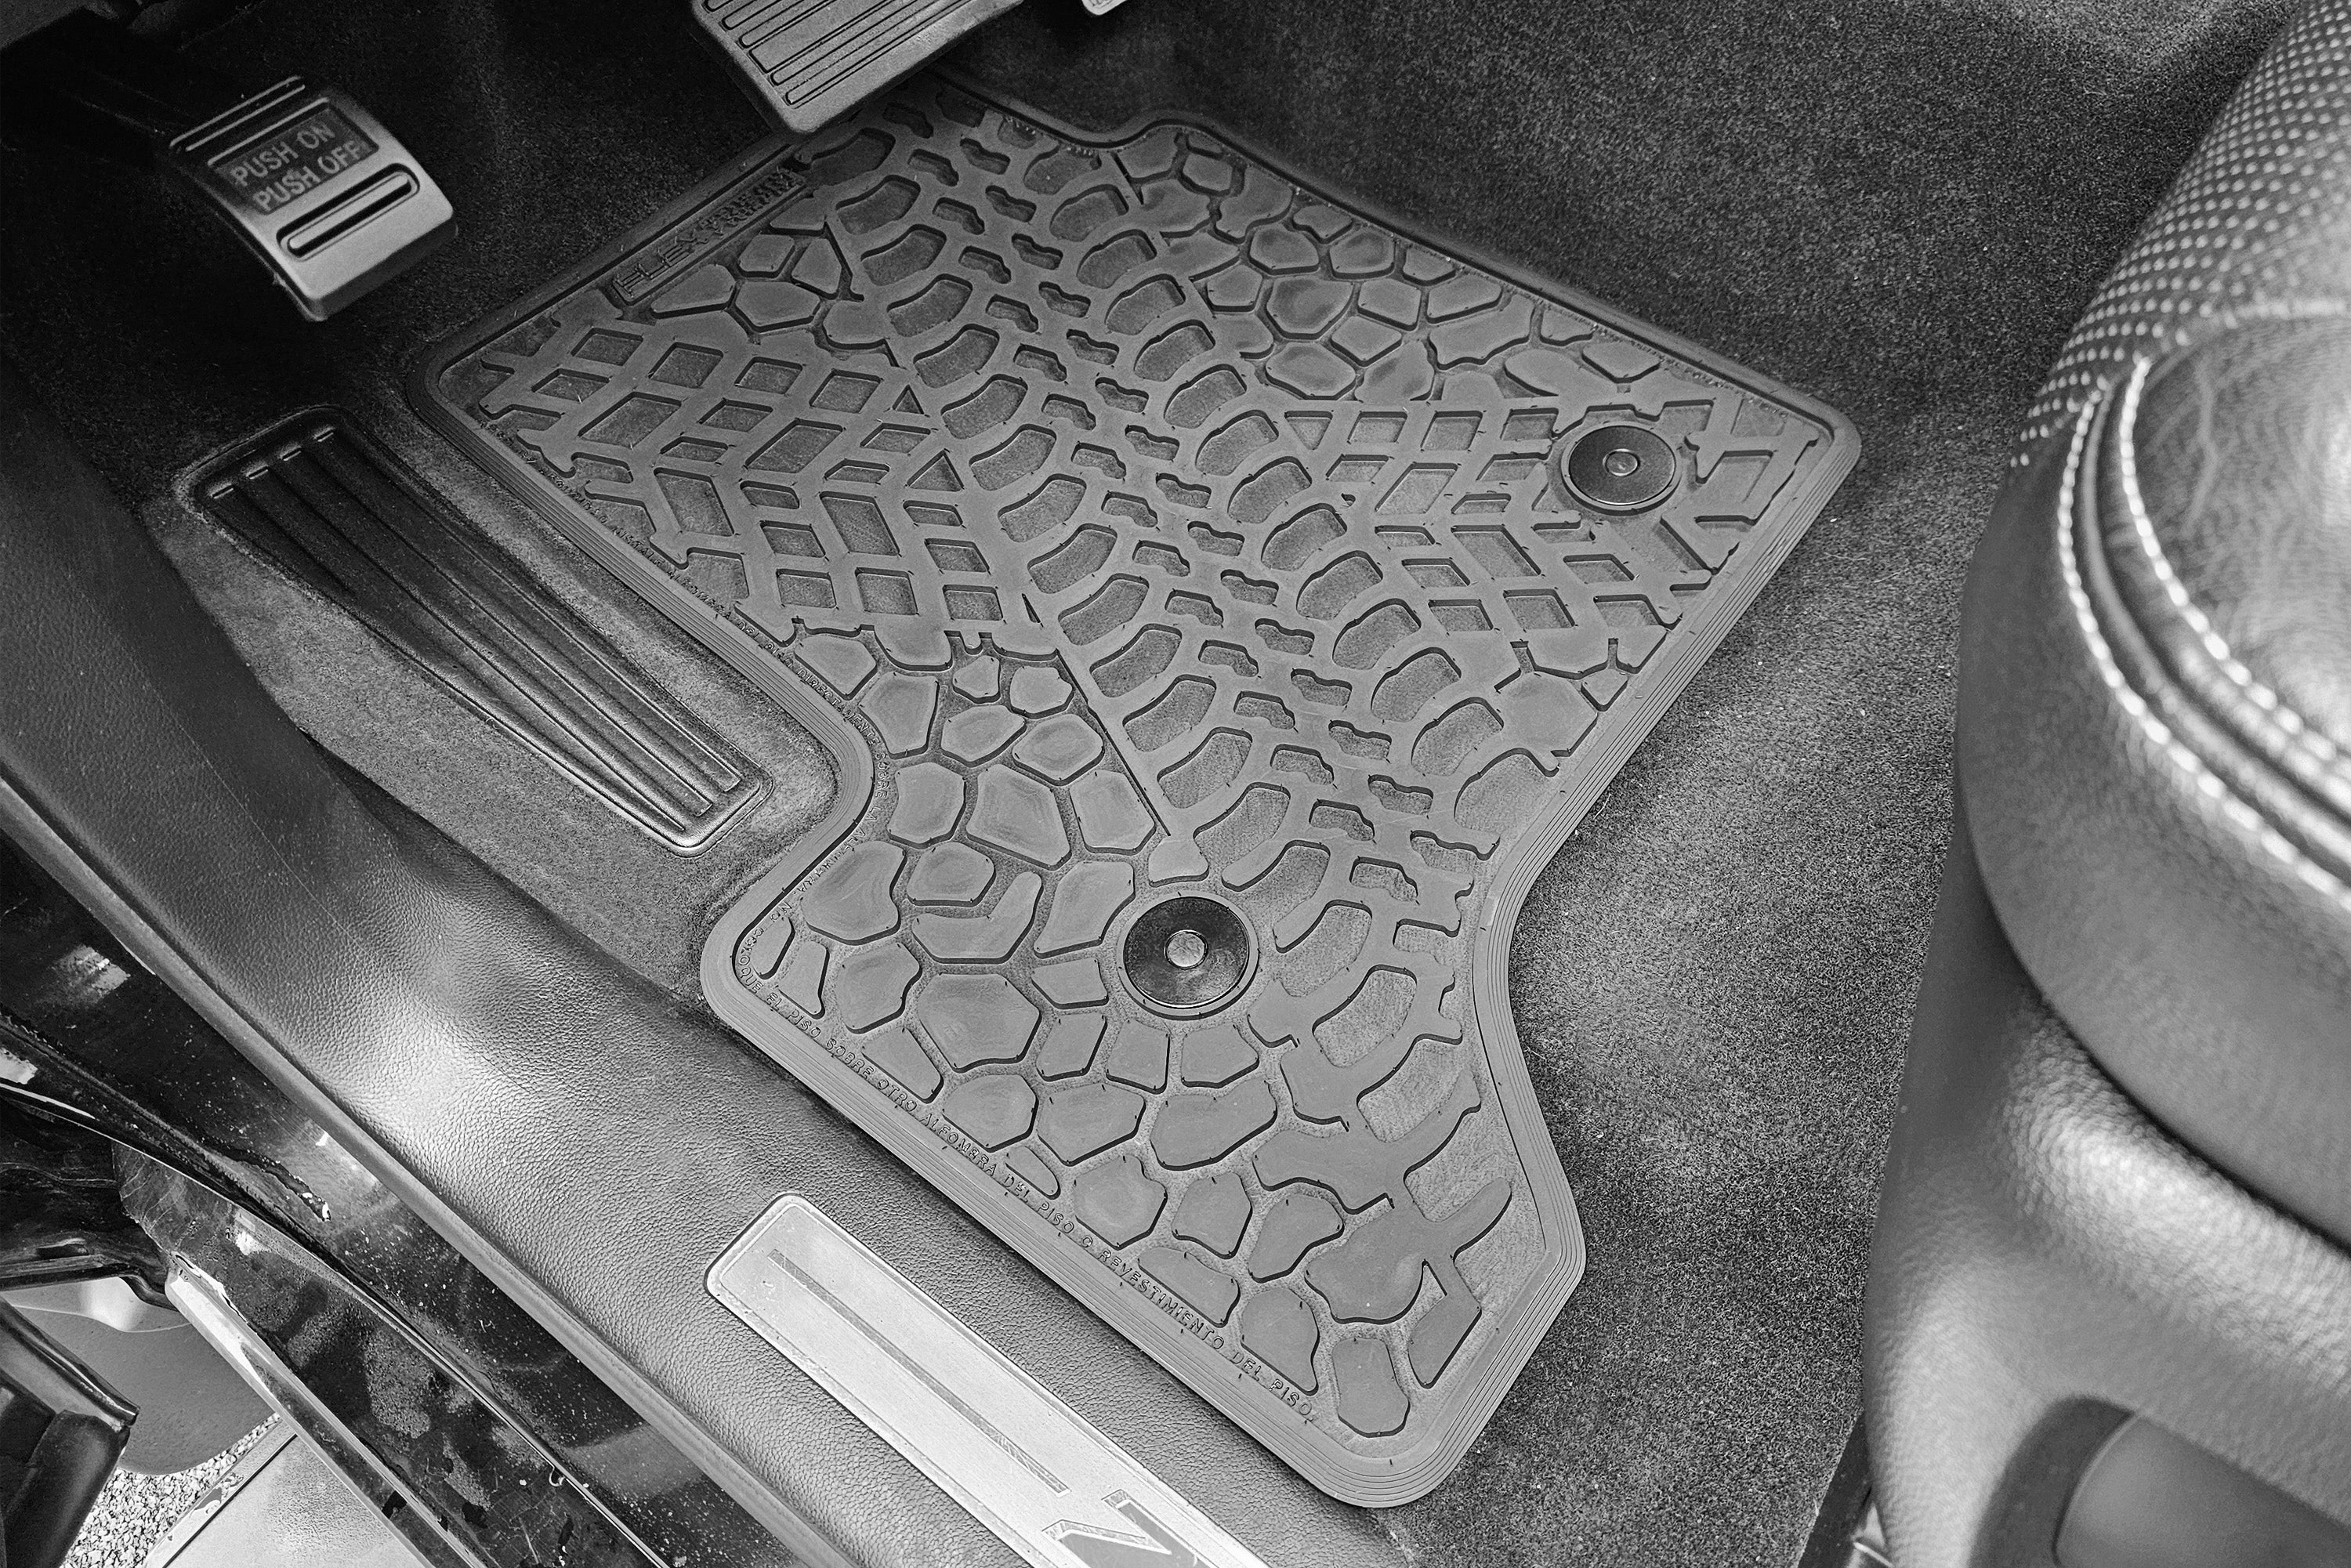 Silverado/Sierra Floor Mats 14-18 Silverado/Sierra Regular Cab 2 Piece Tire Tread/Scorched Earth Scene - Black FlexTread